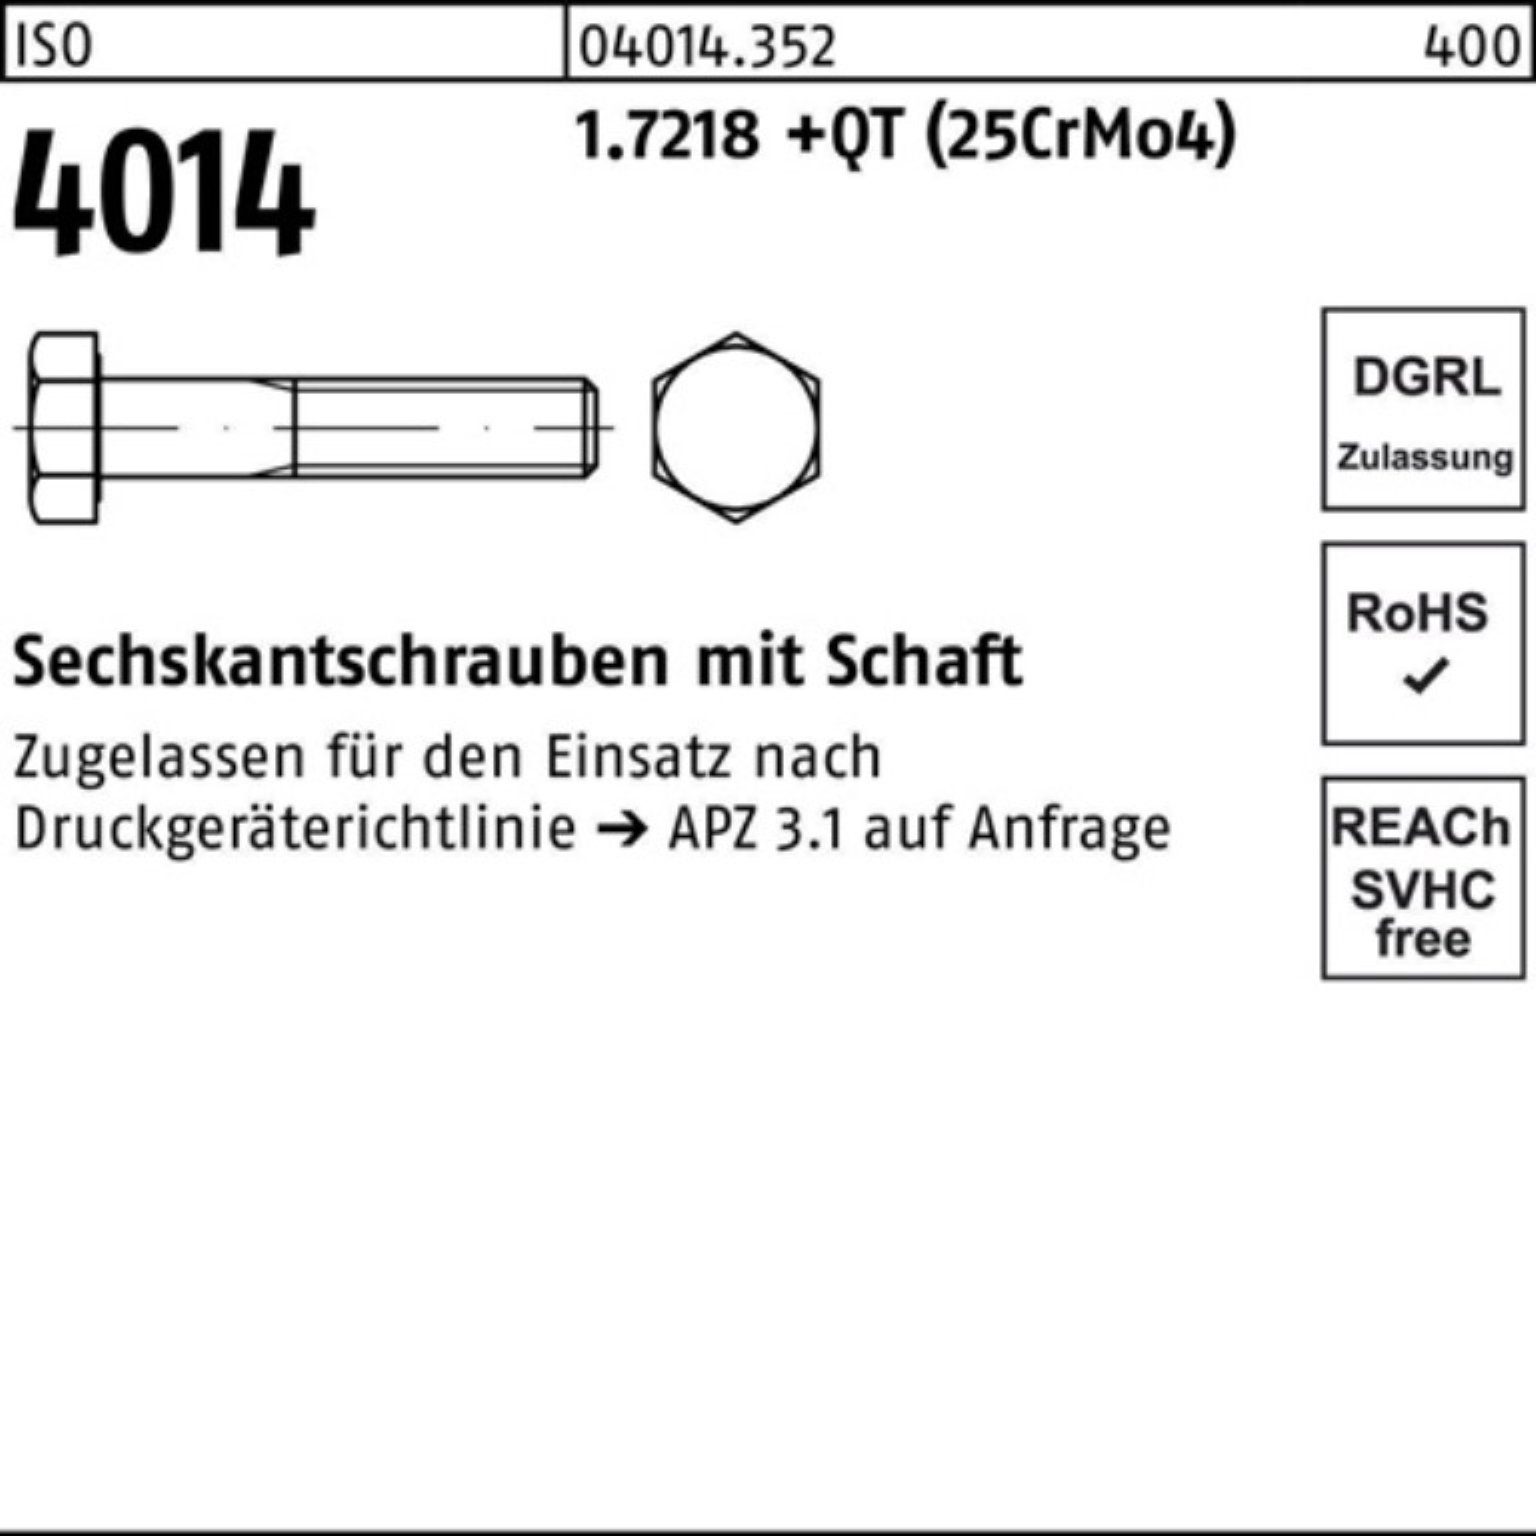 Bufab M30x 130 Sechskantschraube 1.7218 Schaft Pack +QT 100er (25Cr 4014 ISO Sechskantschraube